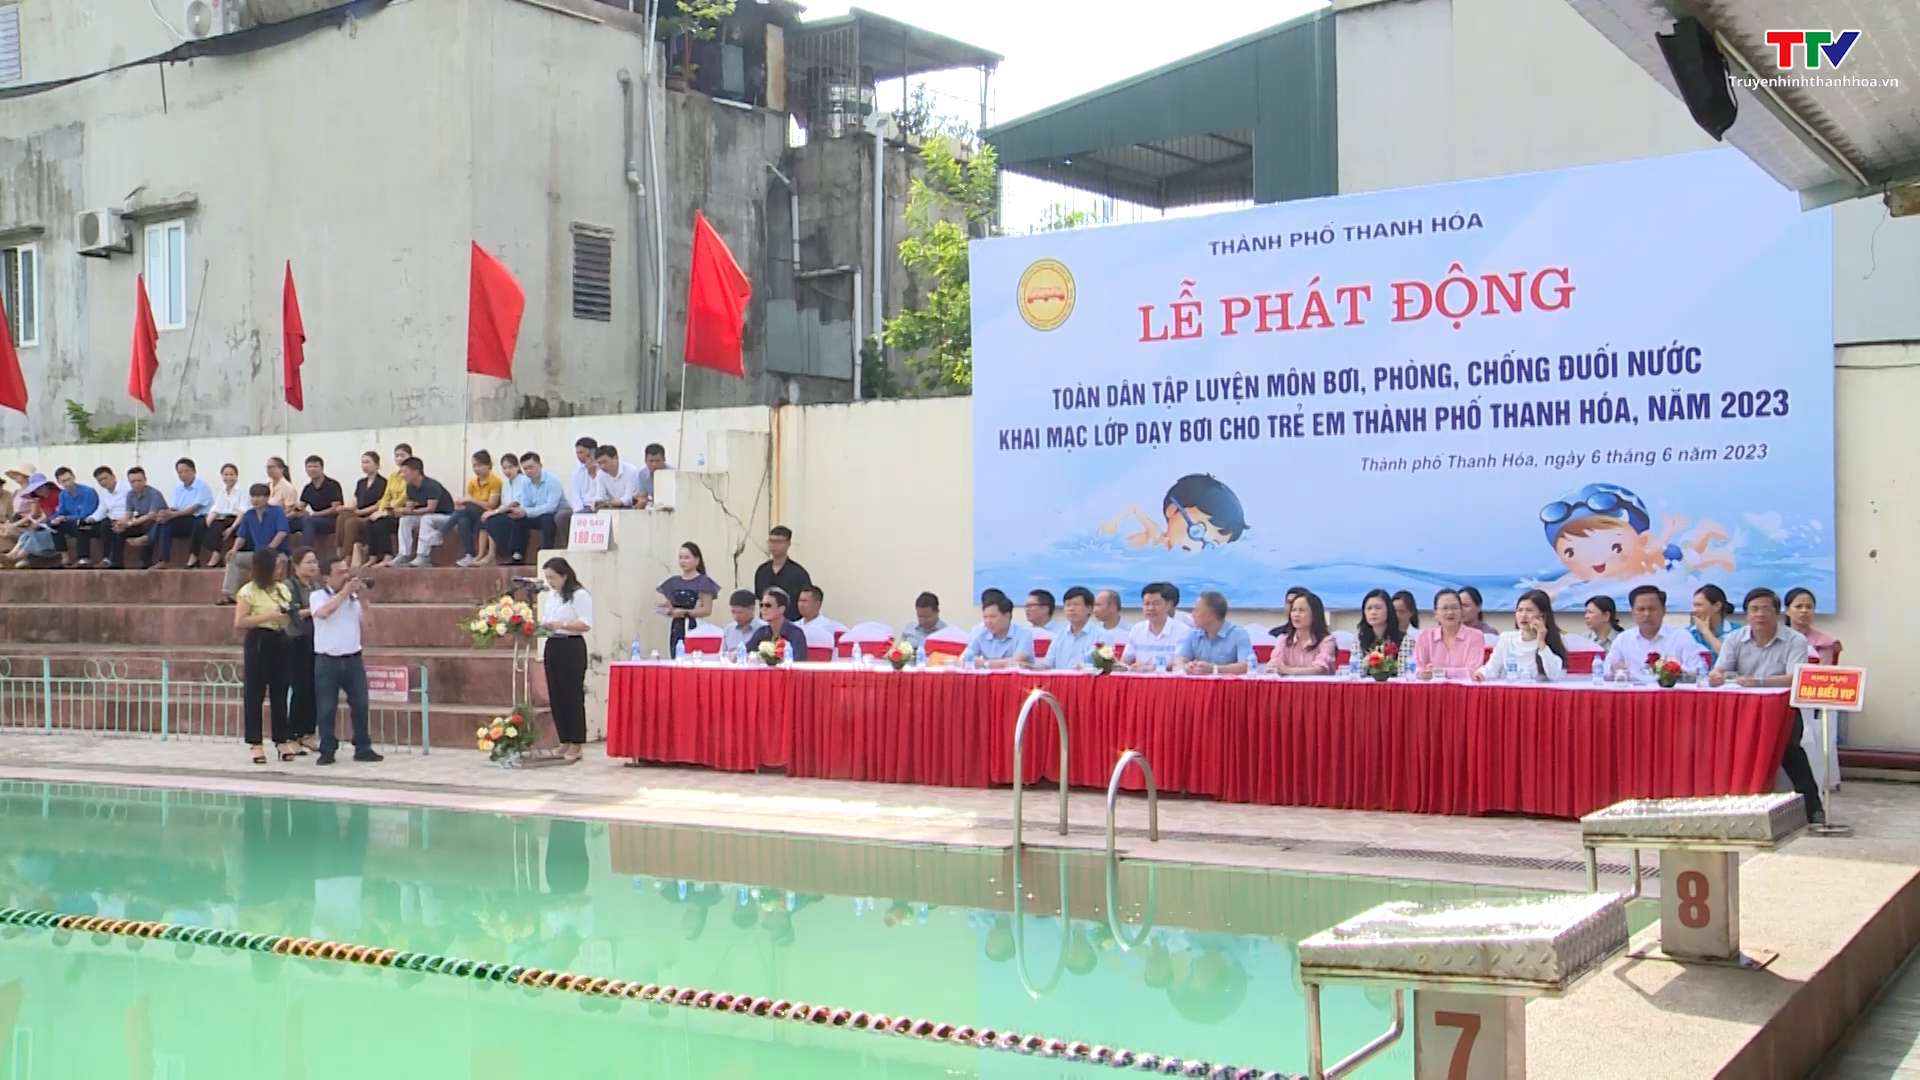 Thành phố Thanh Hóa phát động toàn dân luyện tập môn bơi, phòng chống đuối nước năm 2023 - Ảnh 2.